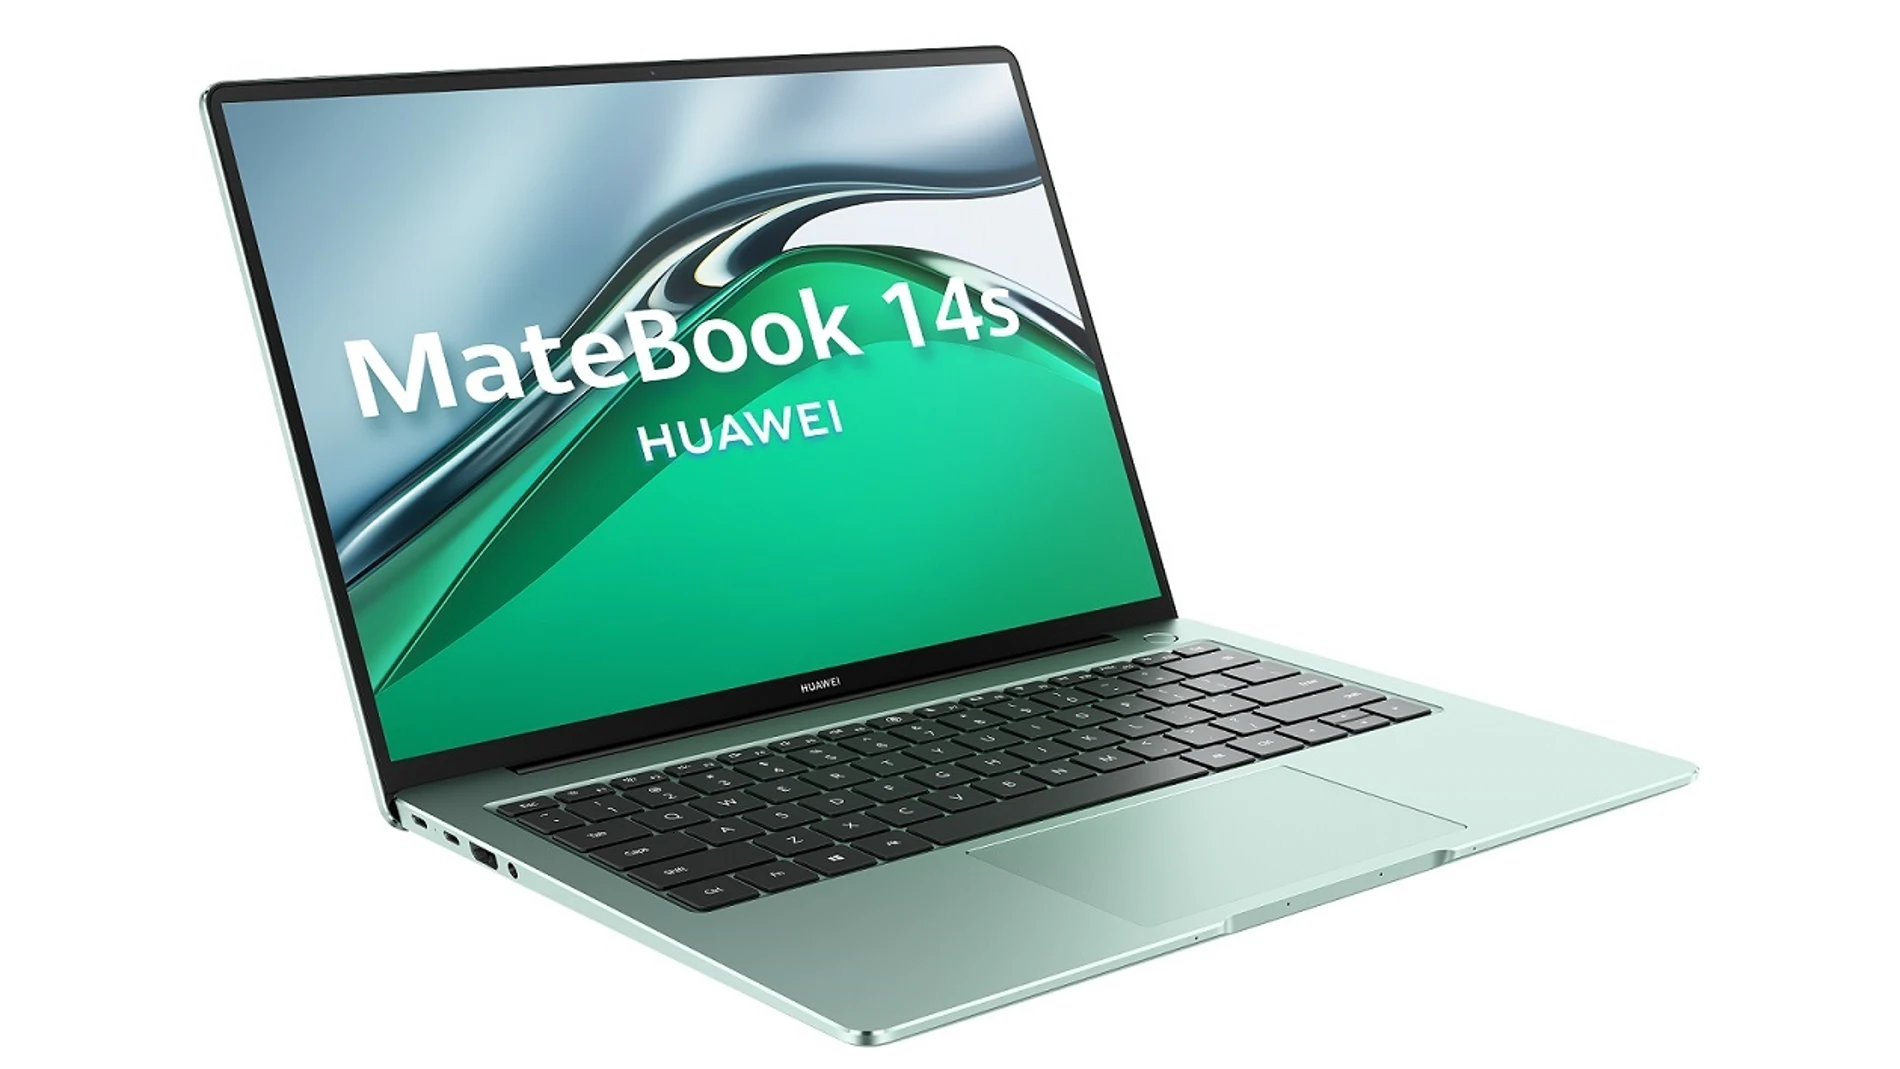 Ordenador portátil MateBook 14sHUAWEI07/10/2021